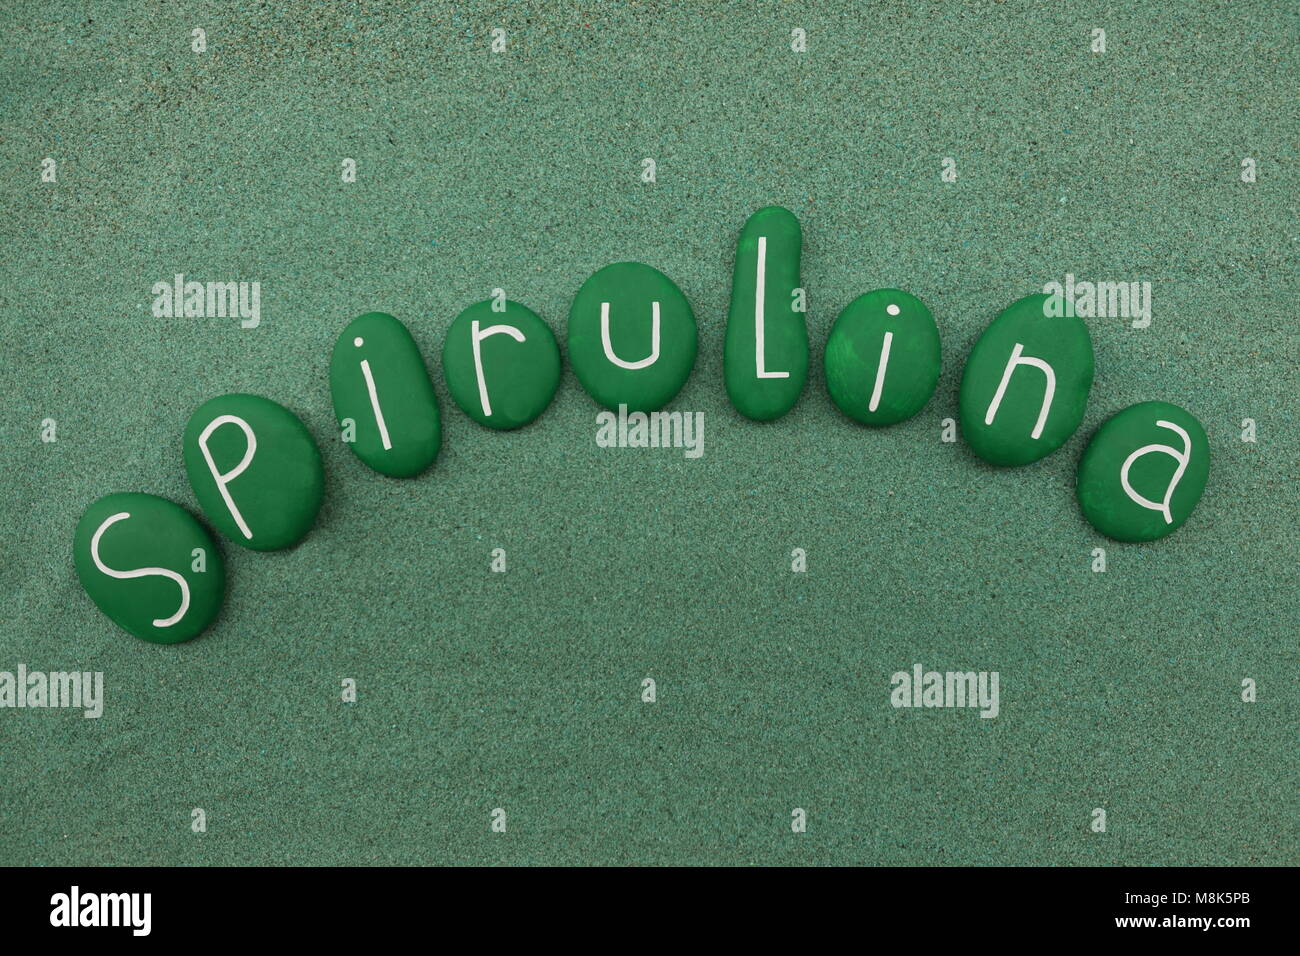 Spirulina Wort mit grün bemalten Steinen Zusammensetzung über grünen Sand Stockfoto